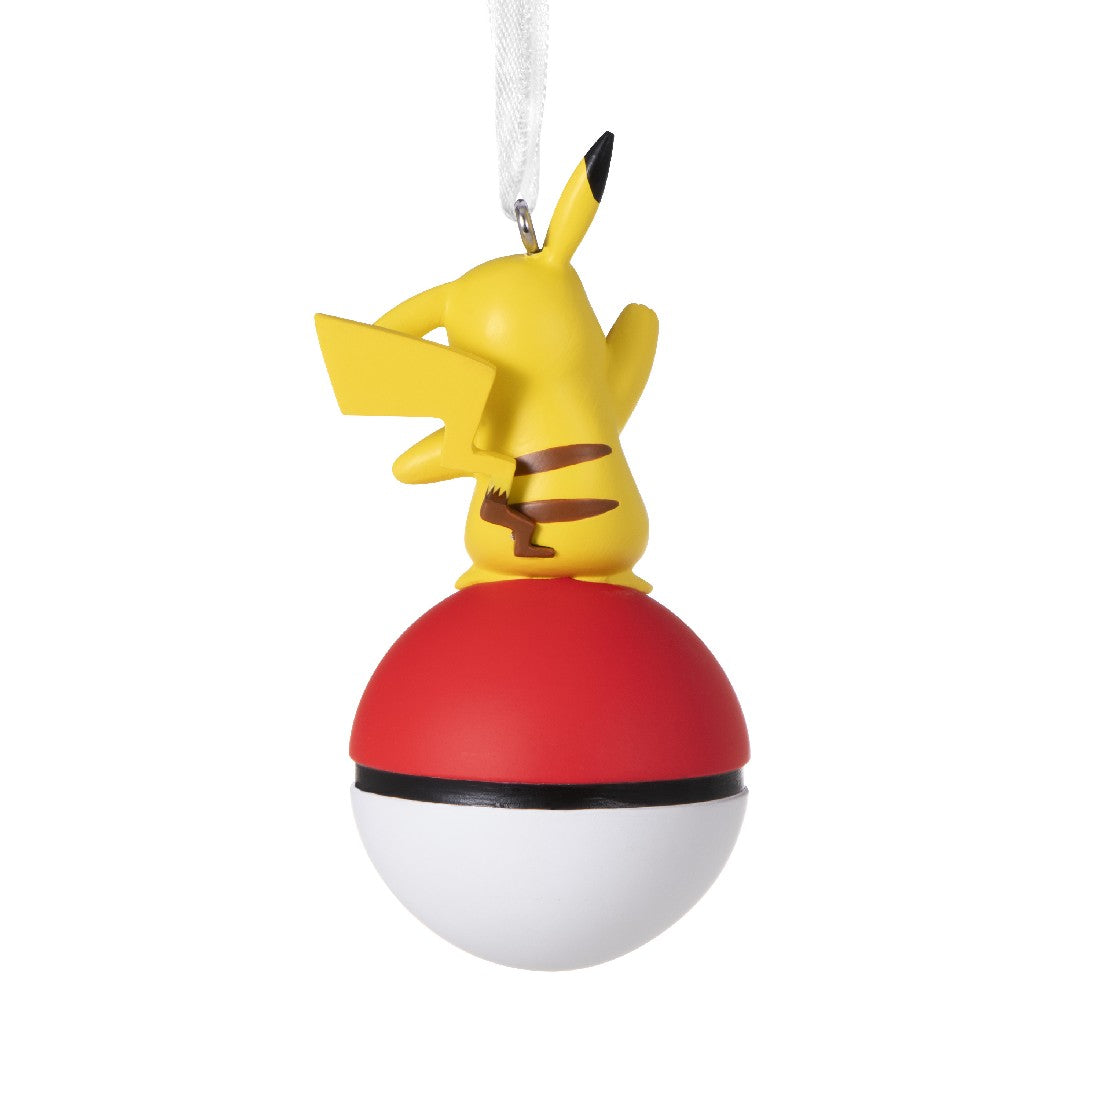 Pokémon Charizard Ornament - Keepsake Ornaments - Hallmark